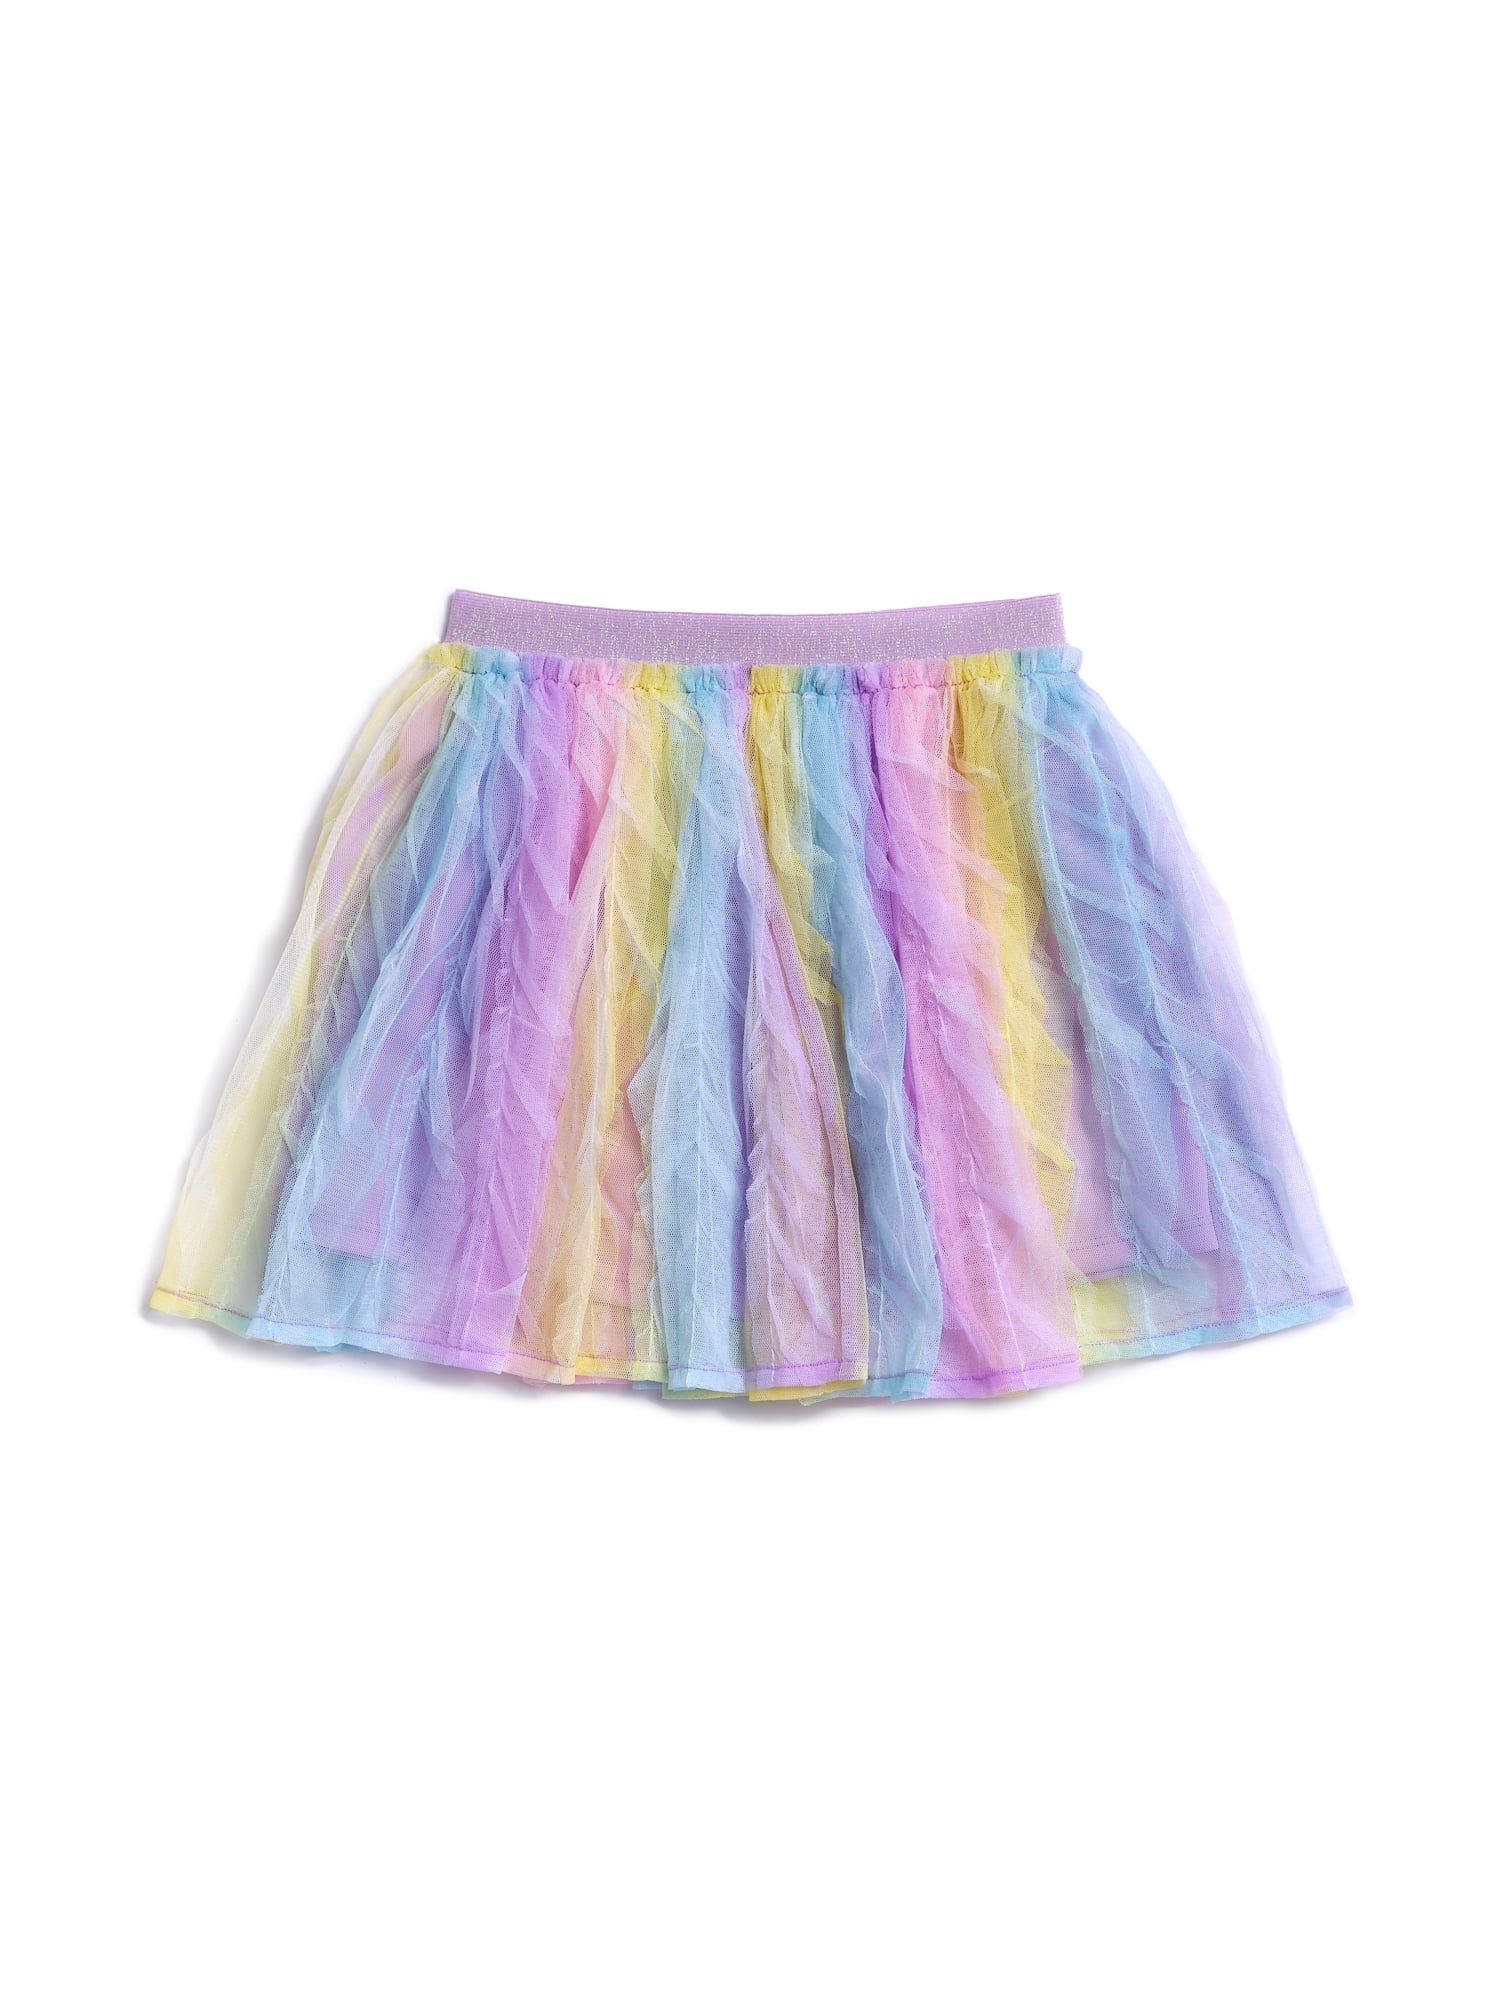 365 Kids from Garanimals Girls 4-10 Gradient Ruffle Mesh Tutu Skirt | Walmart (US)